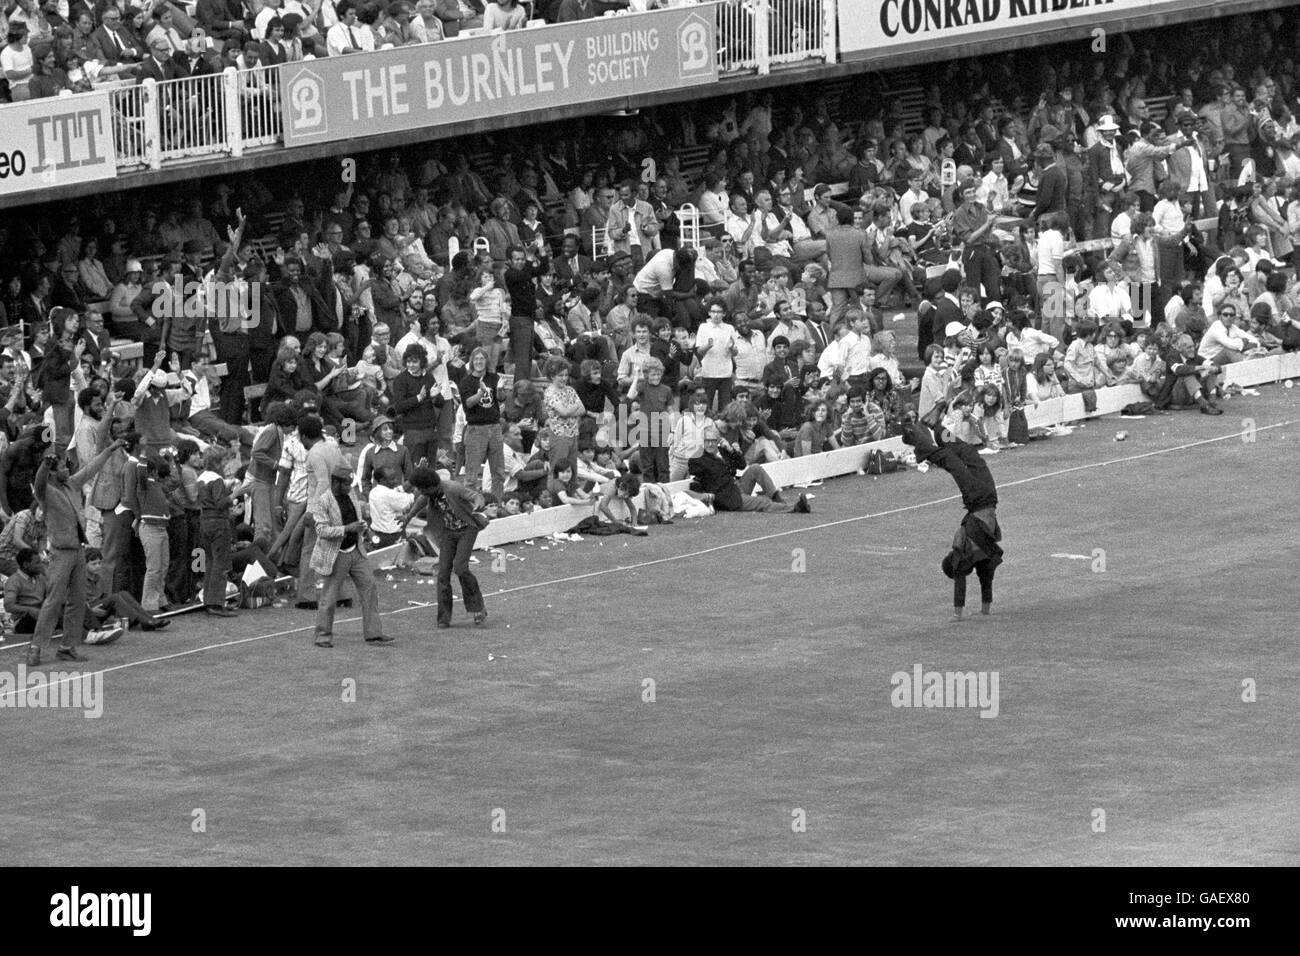 Eine jubelende West-indische Unterstützerin feiert mit einem Handstand, als die ersten Innings von West Indies am ersten Tag des Finaltests zwischen England und West Indies bei Lord's die 300-Marke erreichen. Am Ende des Spiels waren die Westindischen Inseln 335 für 4 - Rohan Kanhai hatte 156 Punkte nicht aus. Stockfoto